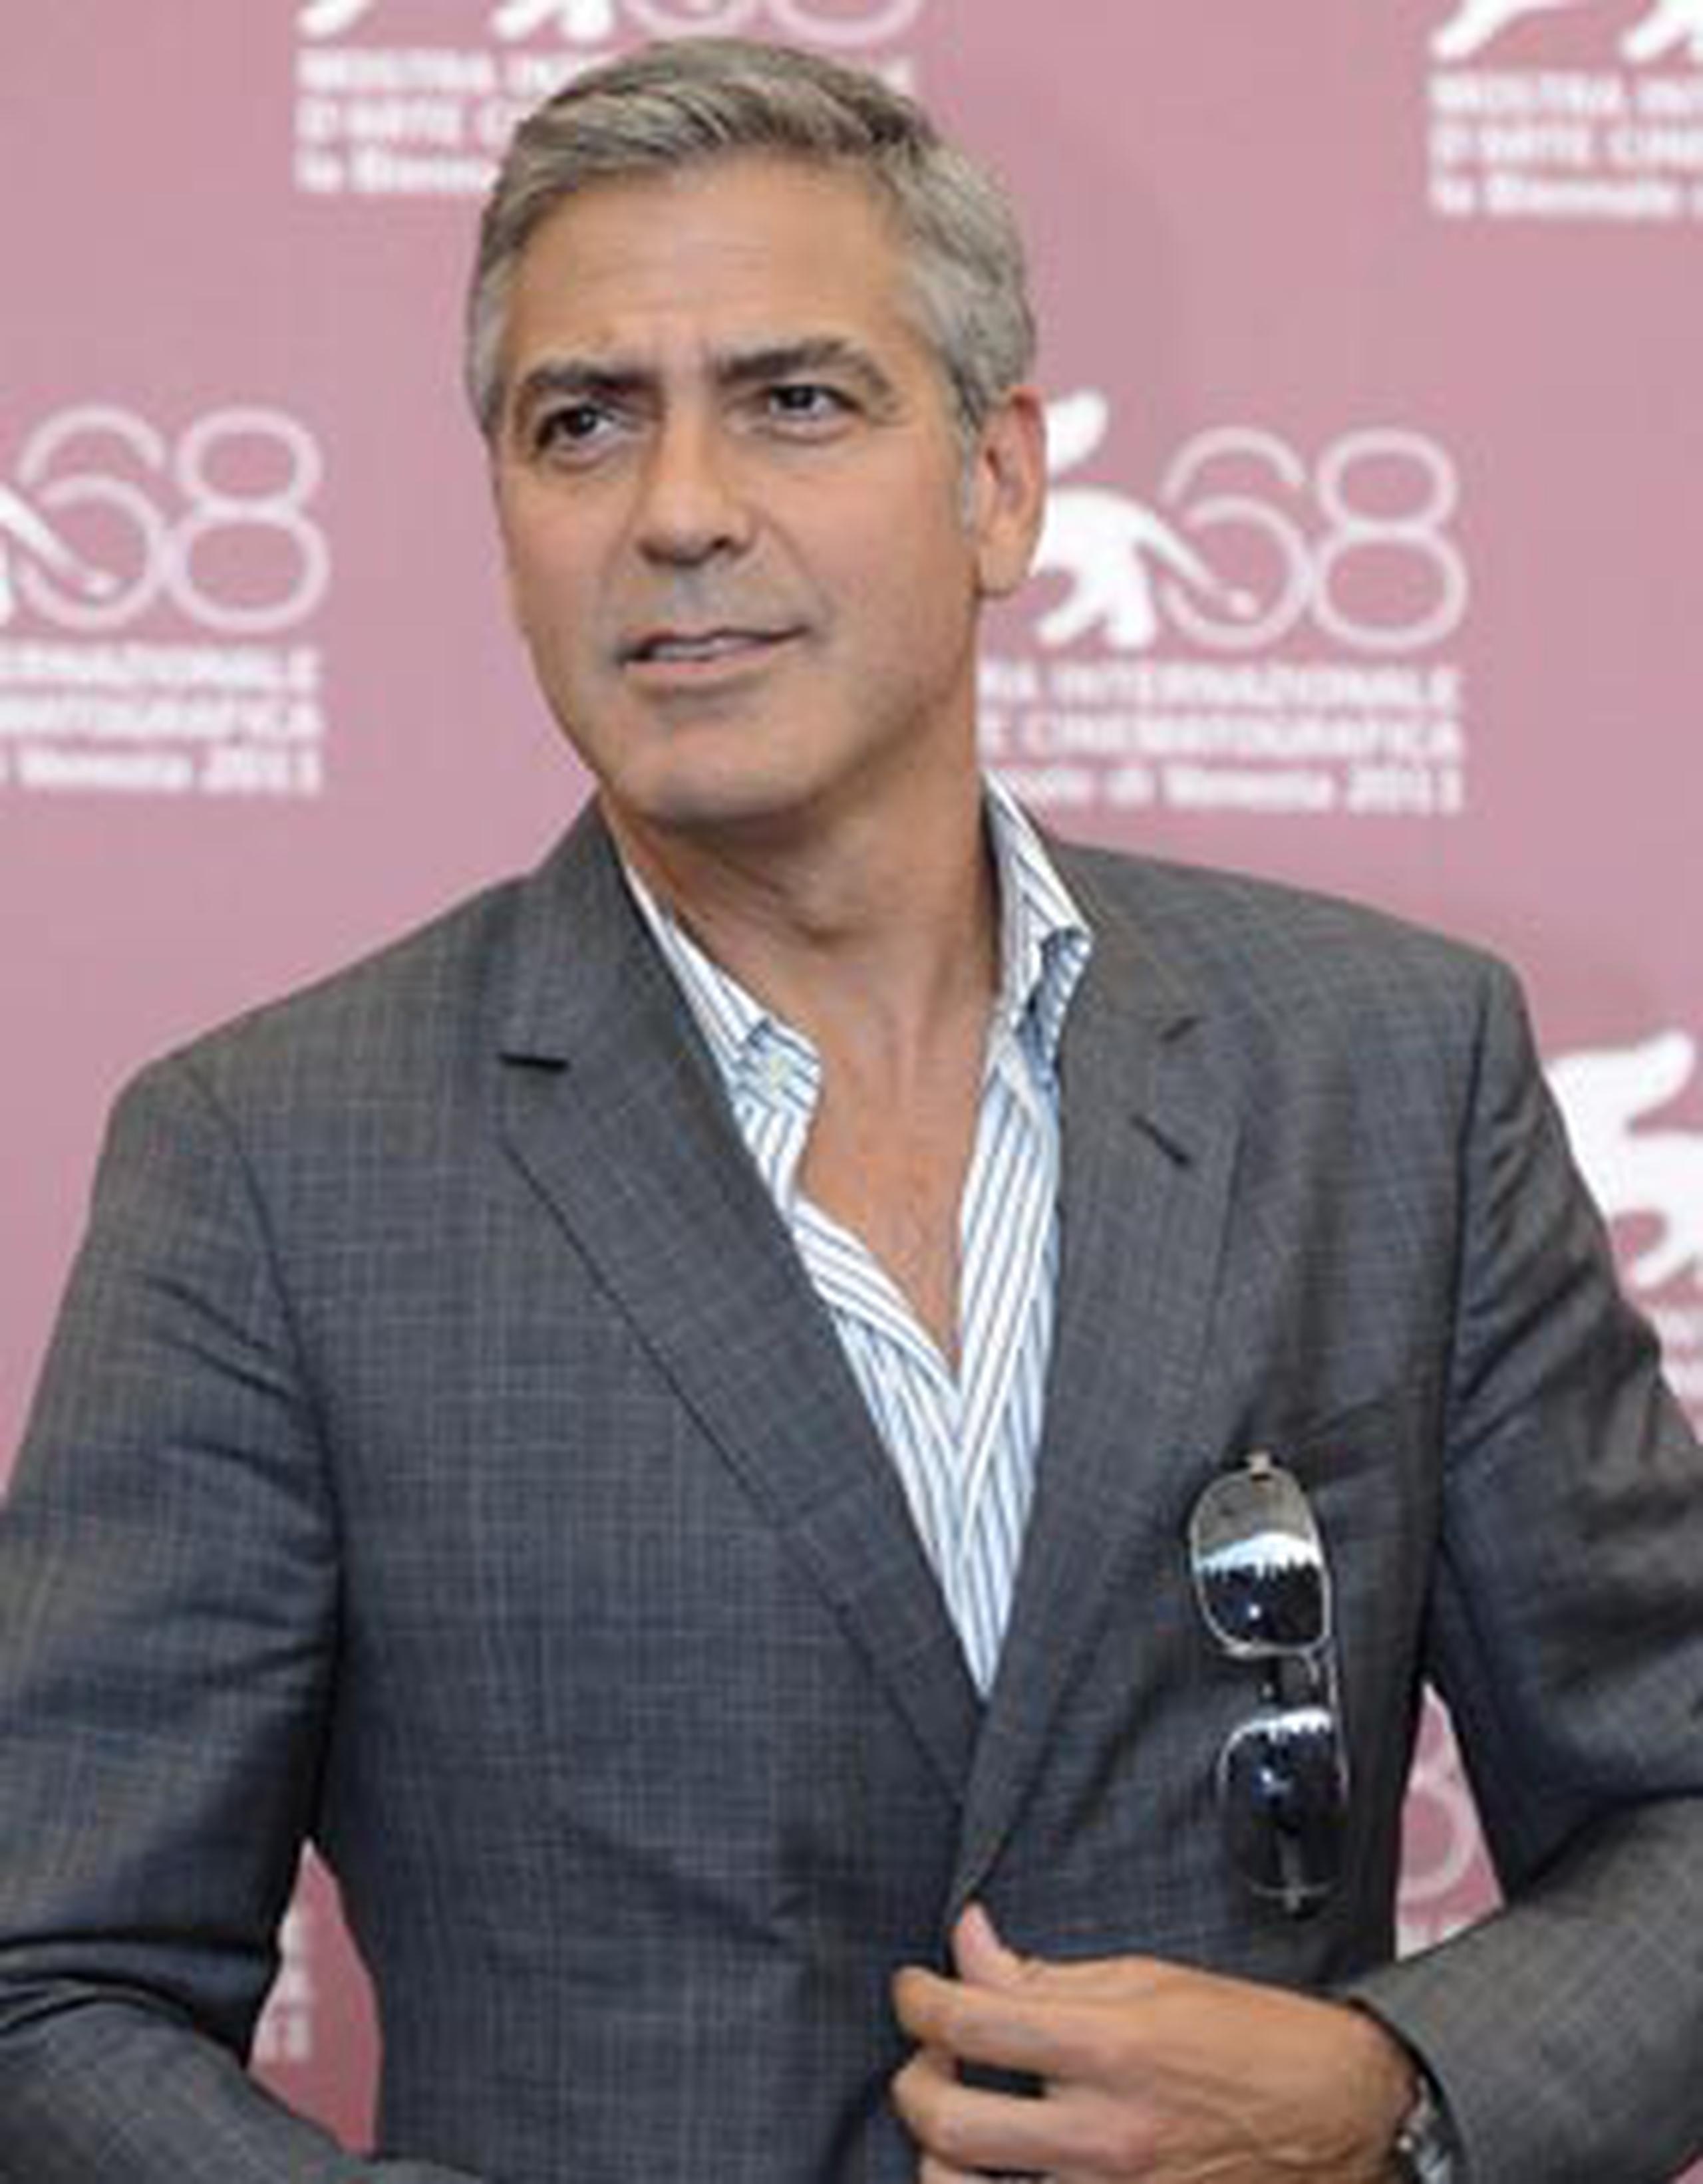 Desde los 33 años, las canas del ganador del Óscar, George Clooney, se han convertido en un atributo que lo coloca en la lista de los más sexis. (Archivo)